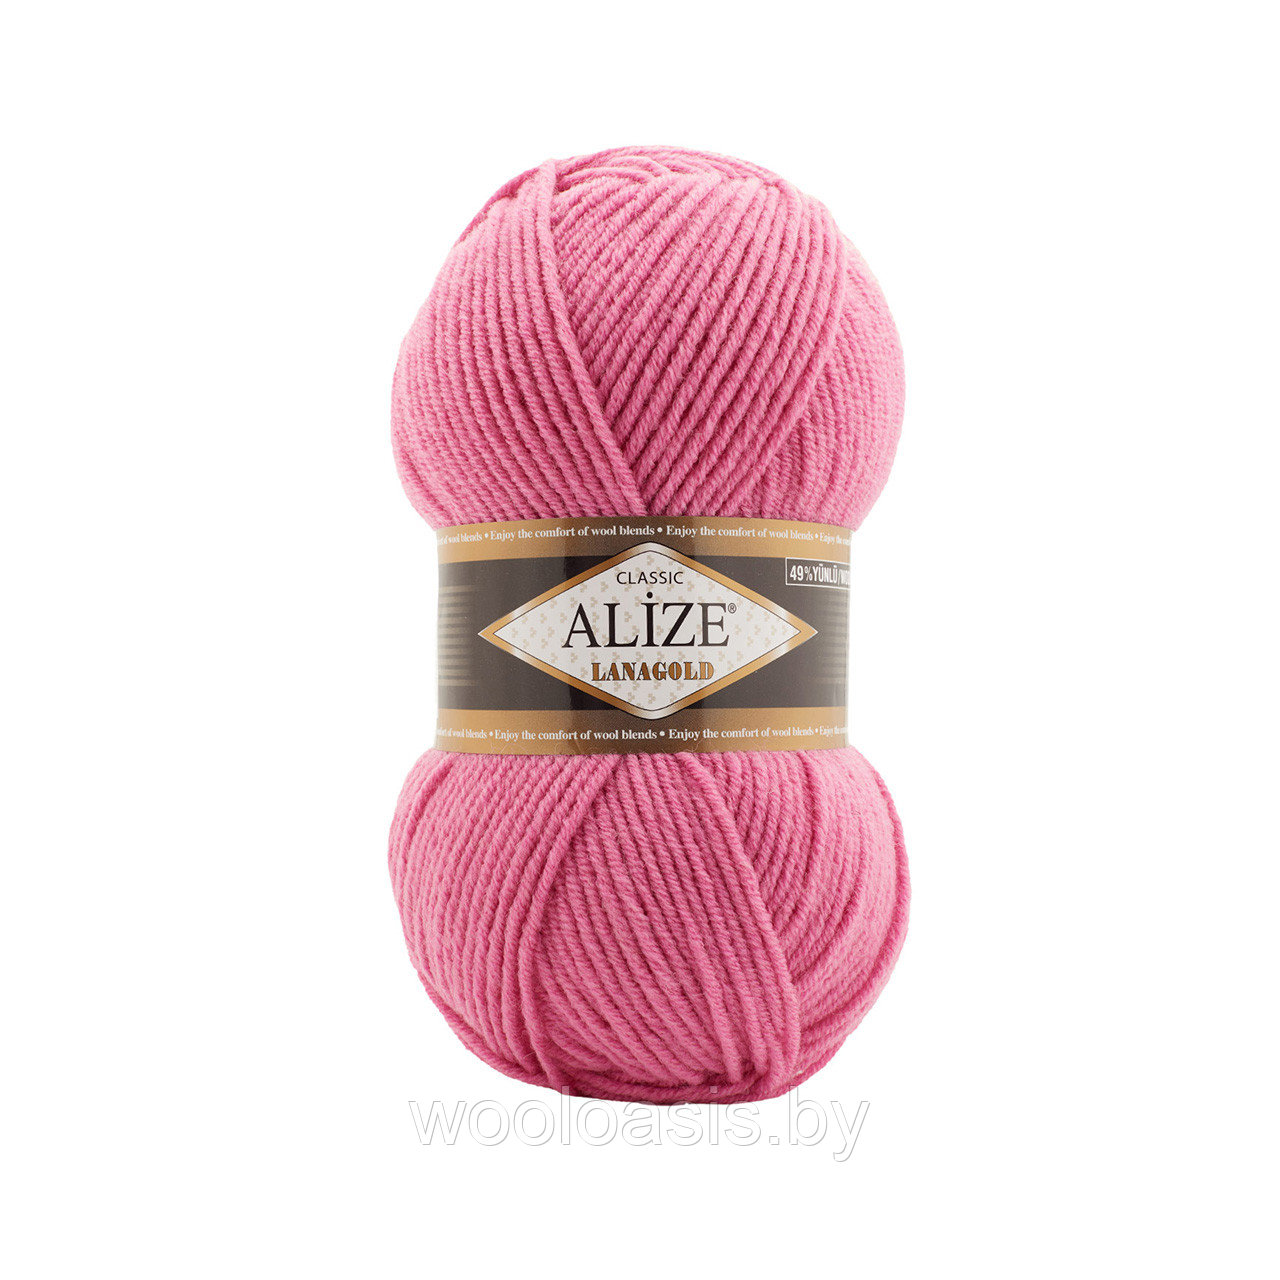 Пряжа Alize Lanagold Classic, Ализе Ланаголд Классик, турецкая, шерсть с акрилом, для ручного вязания (цвет 178)